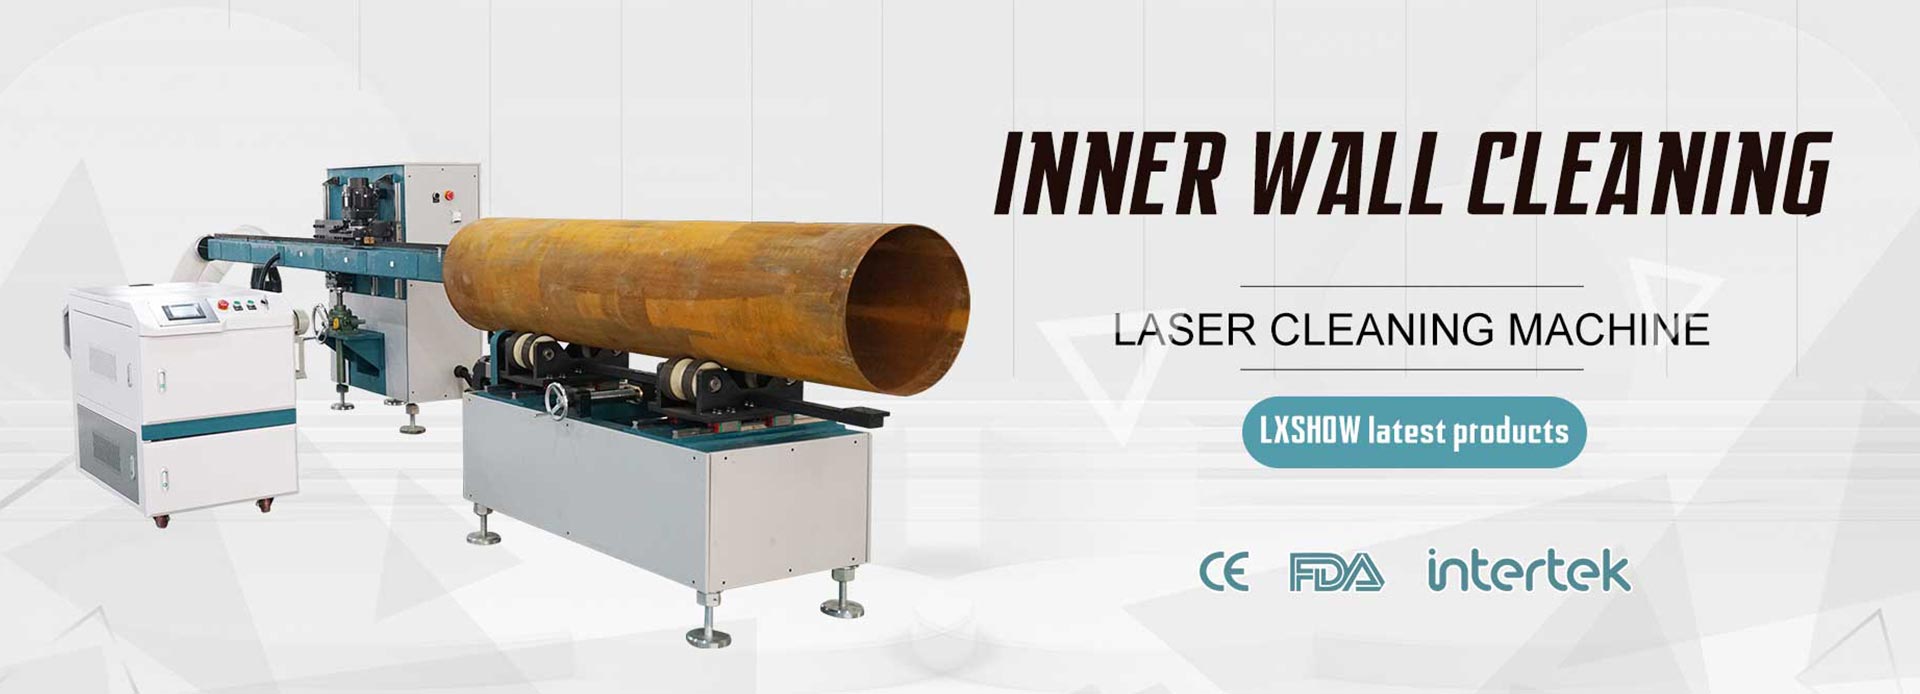 LXC-Màquina de neteja per desoxidació per làser de paret interior de tubs metàl·lics